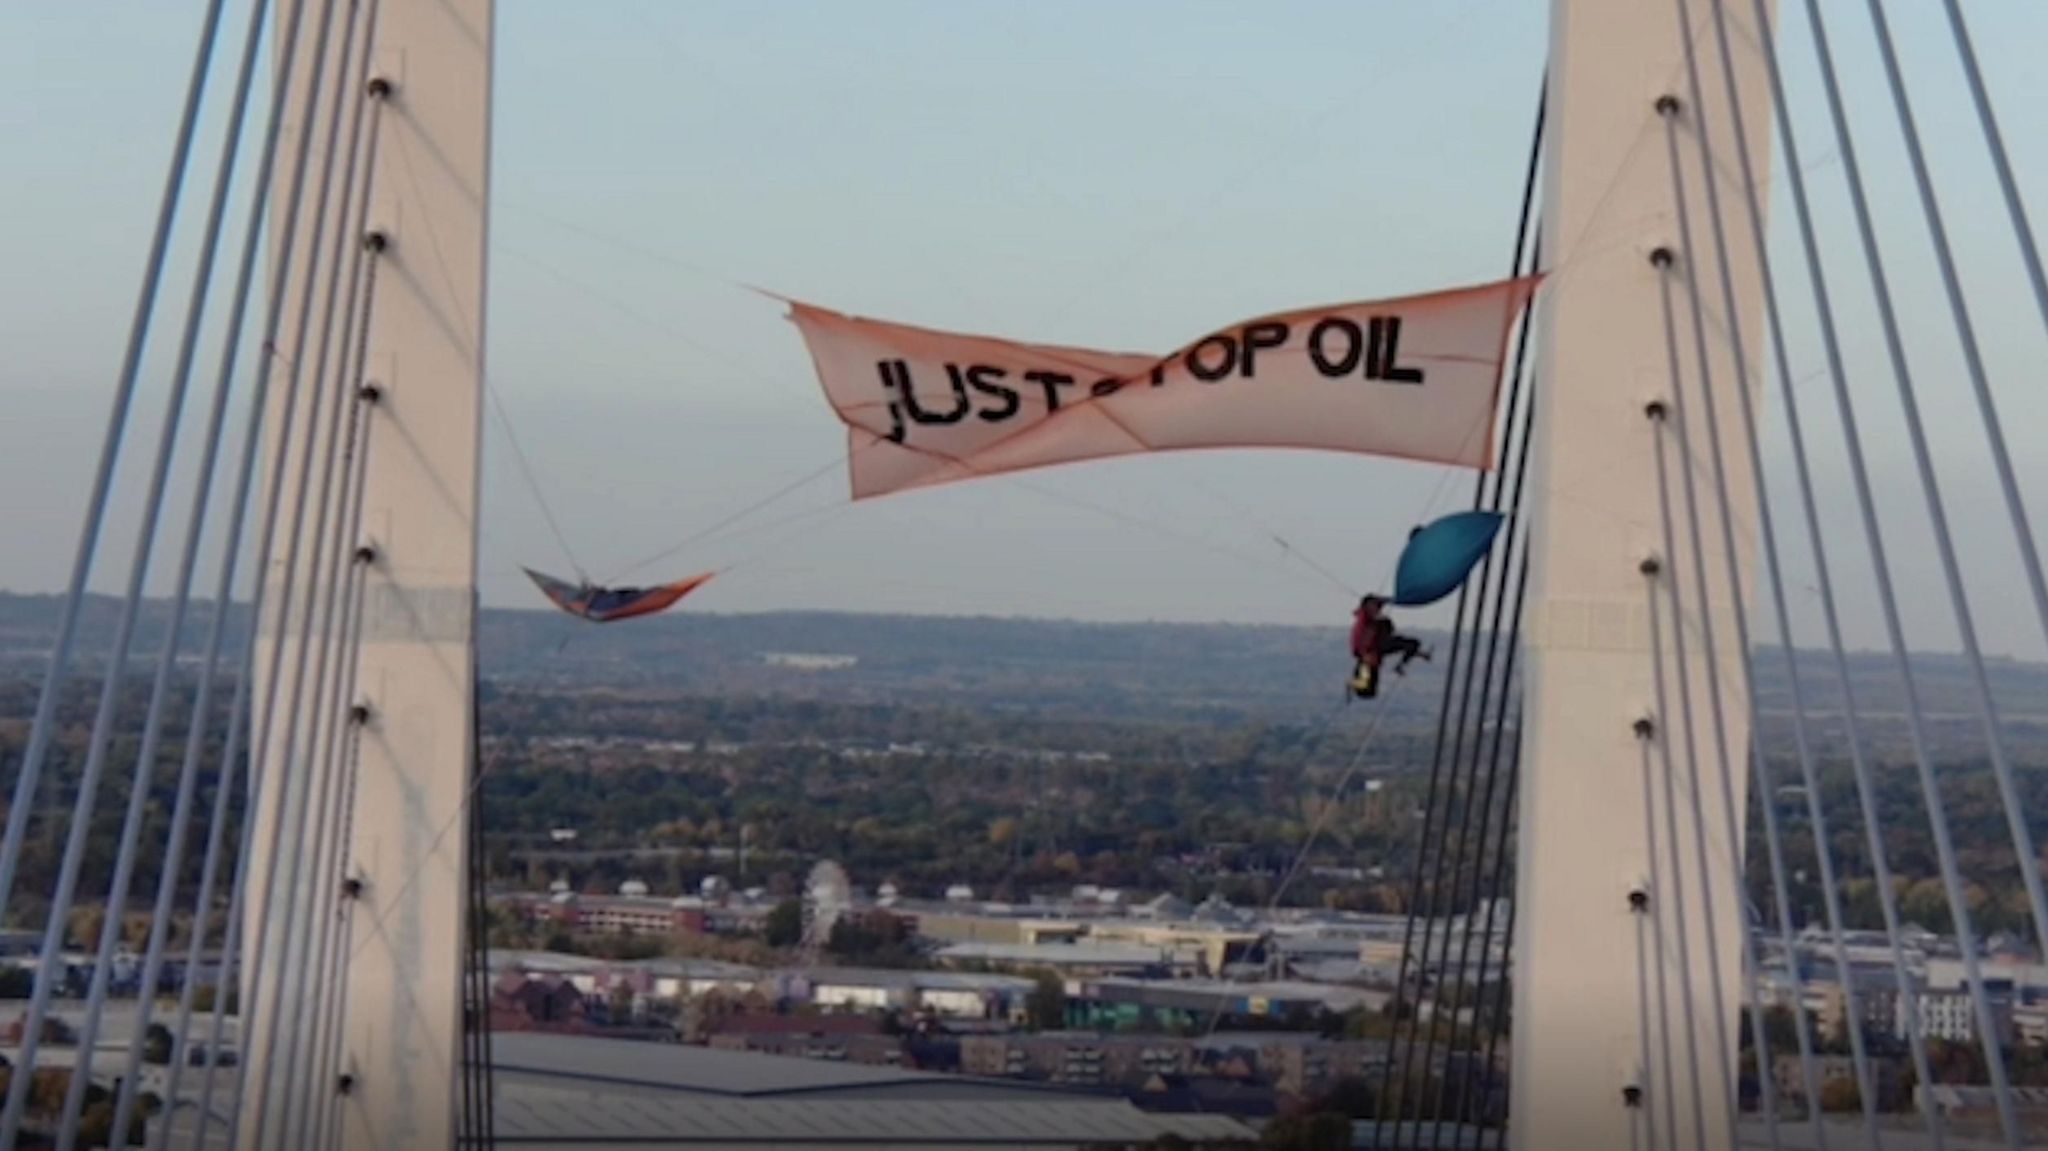 Just Stop Oil: UN criticises 'severe' jail sentences - BBC News